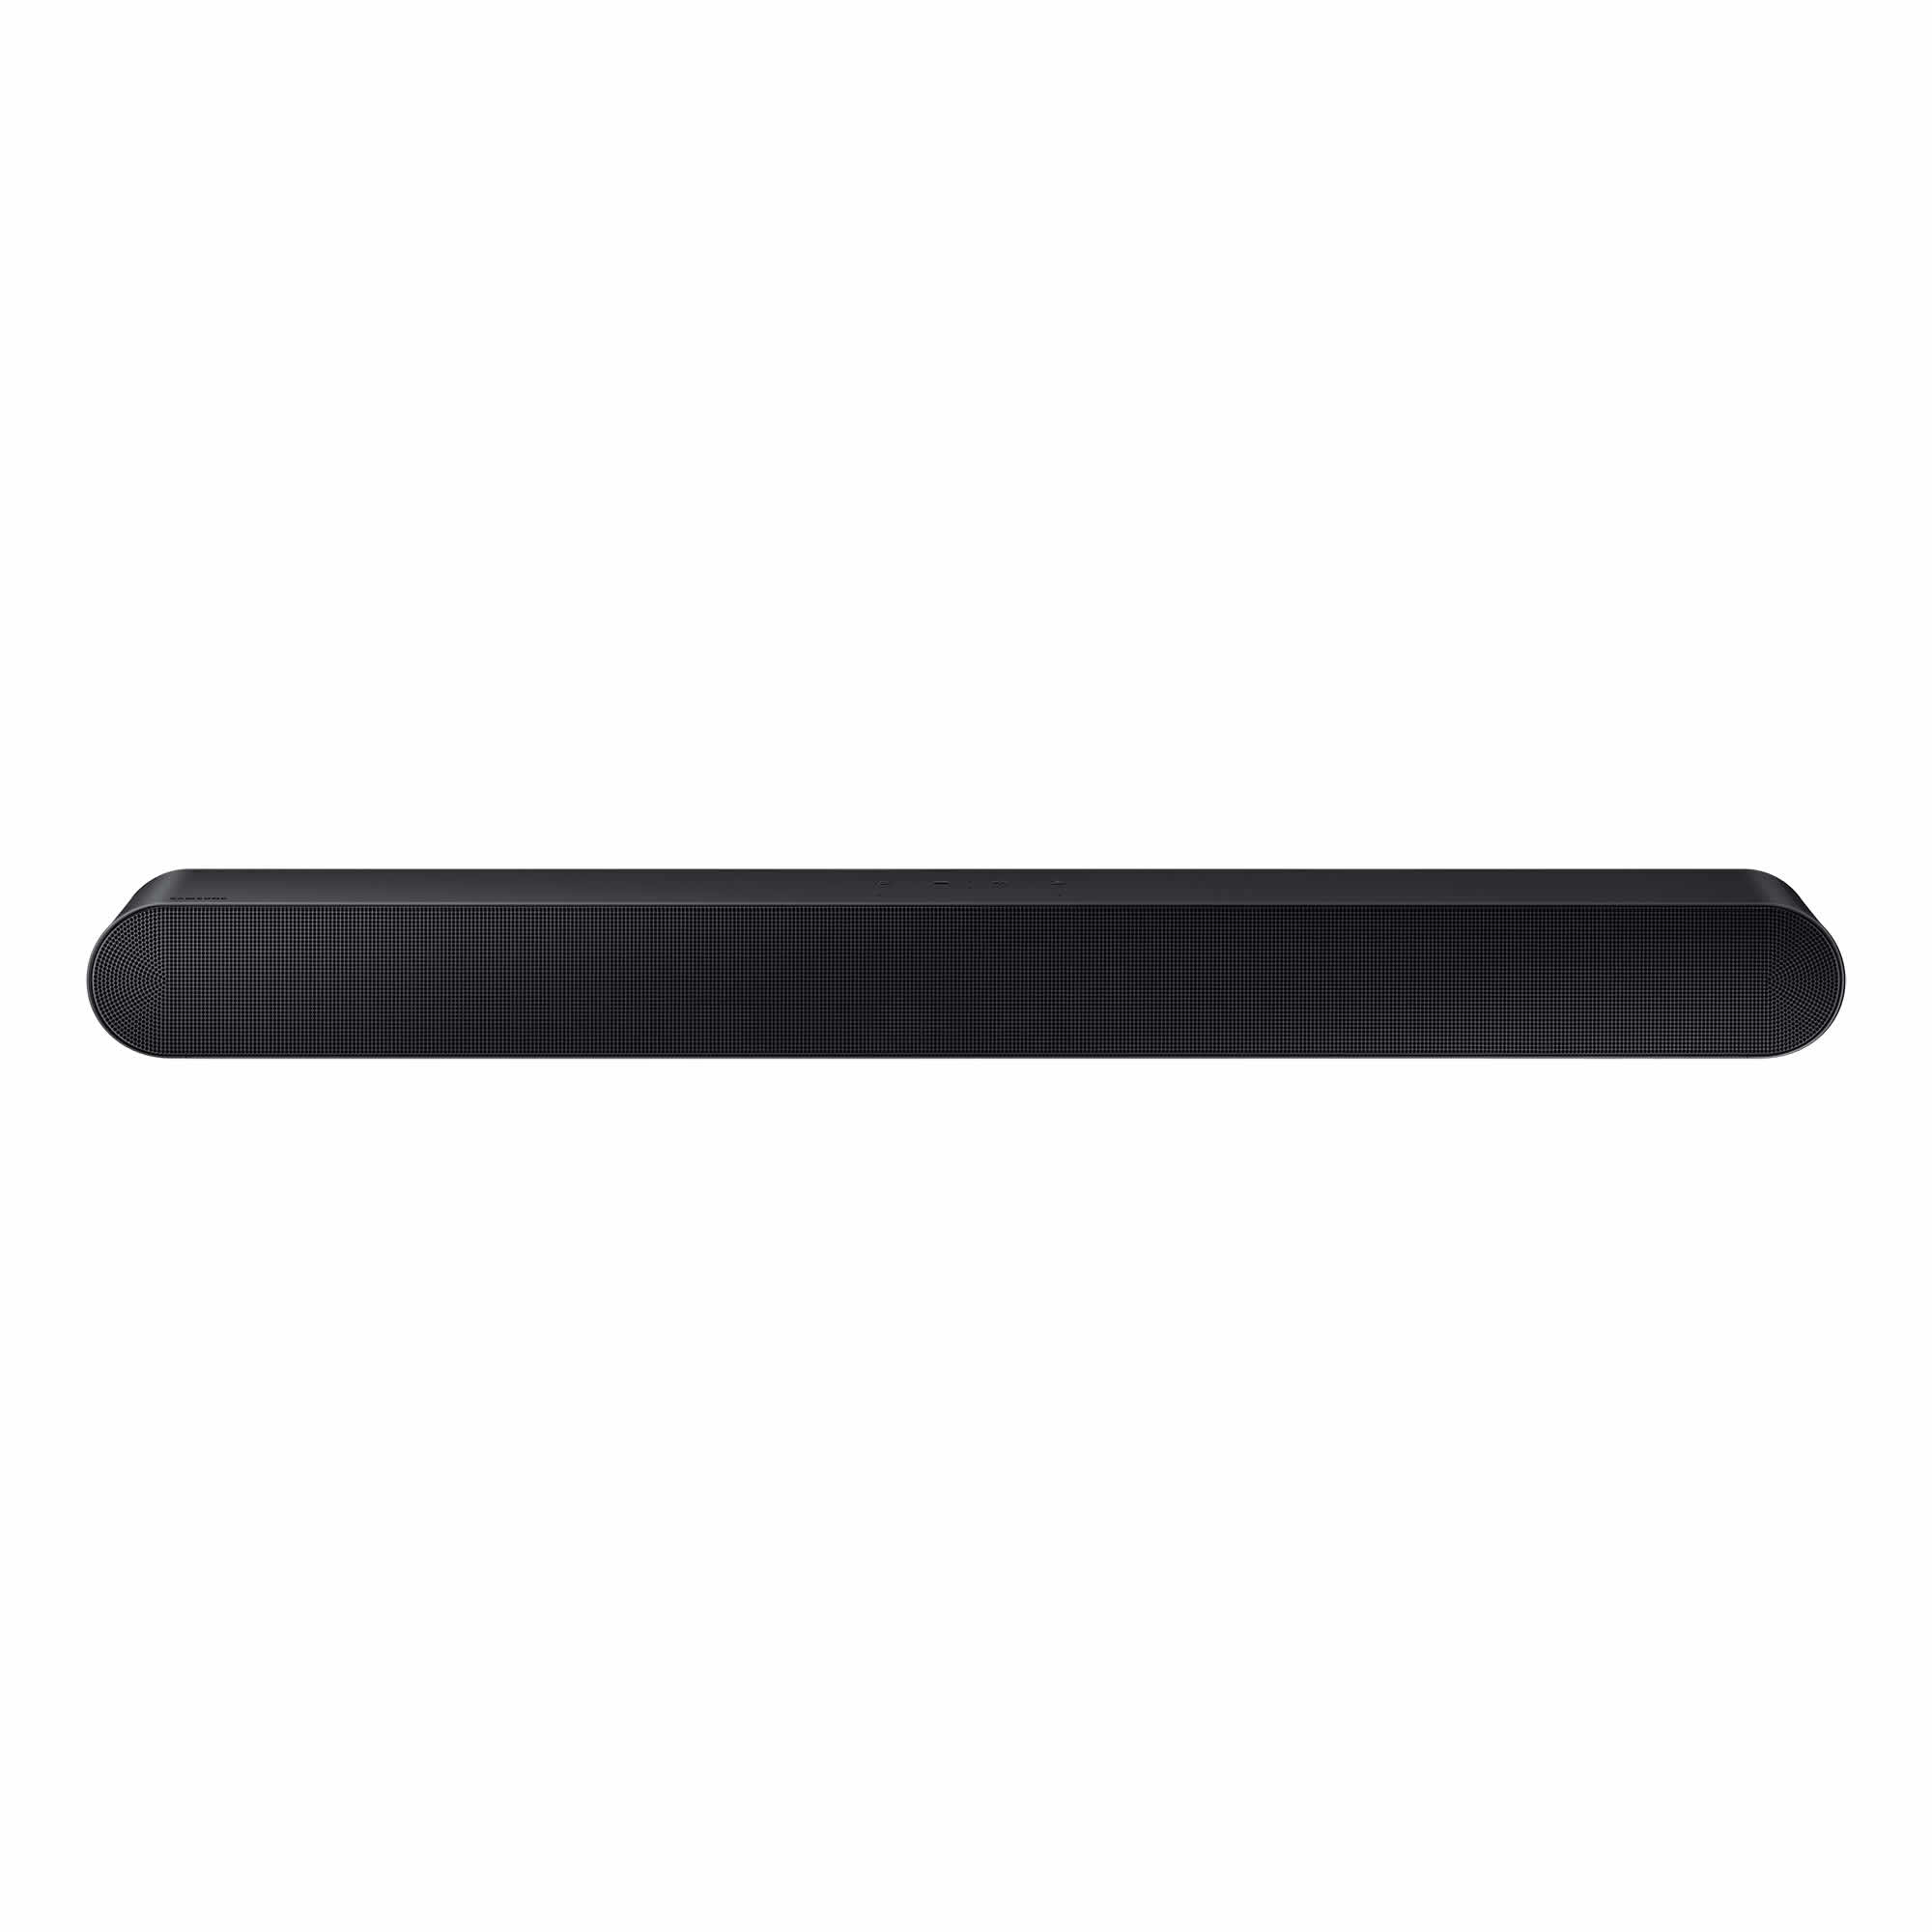 Samsung 5.0Ch All-in-One Soundbar Alexa Voice Control Black